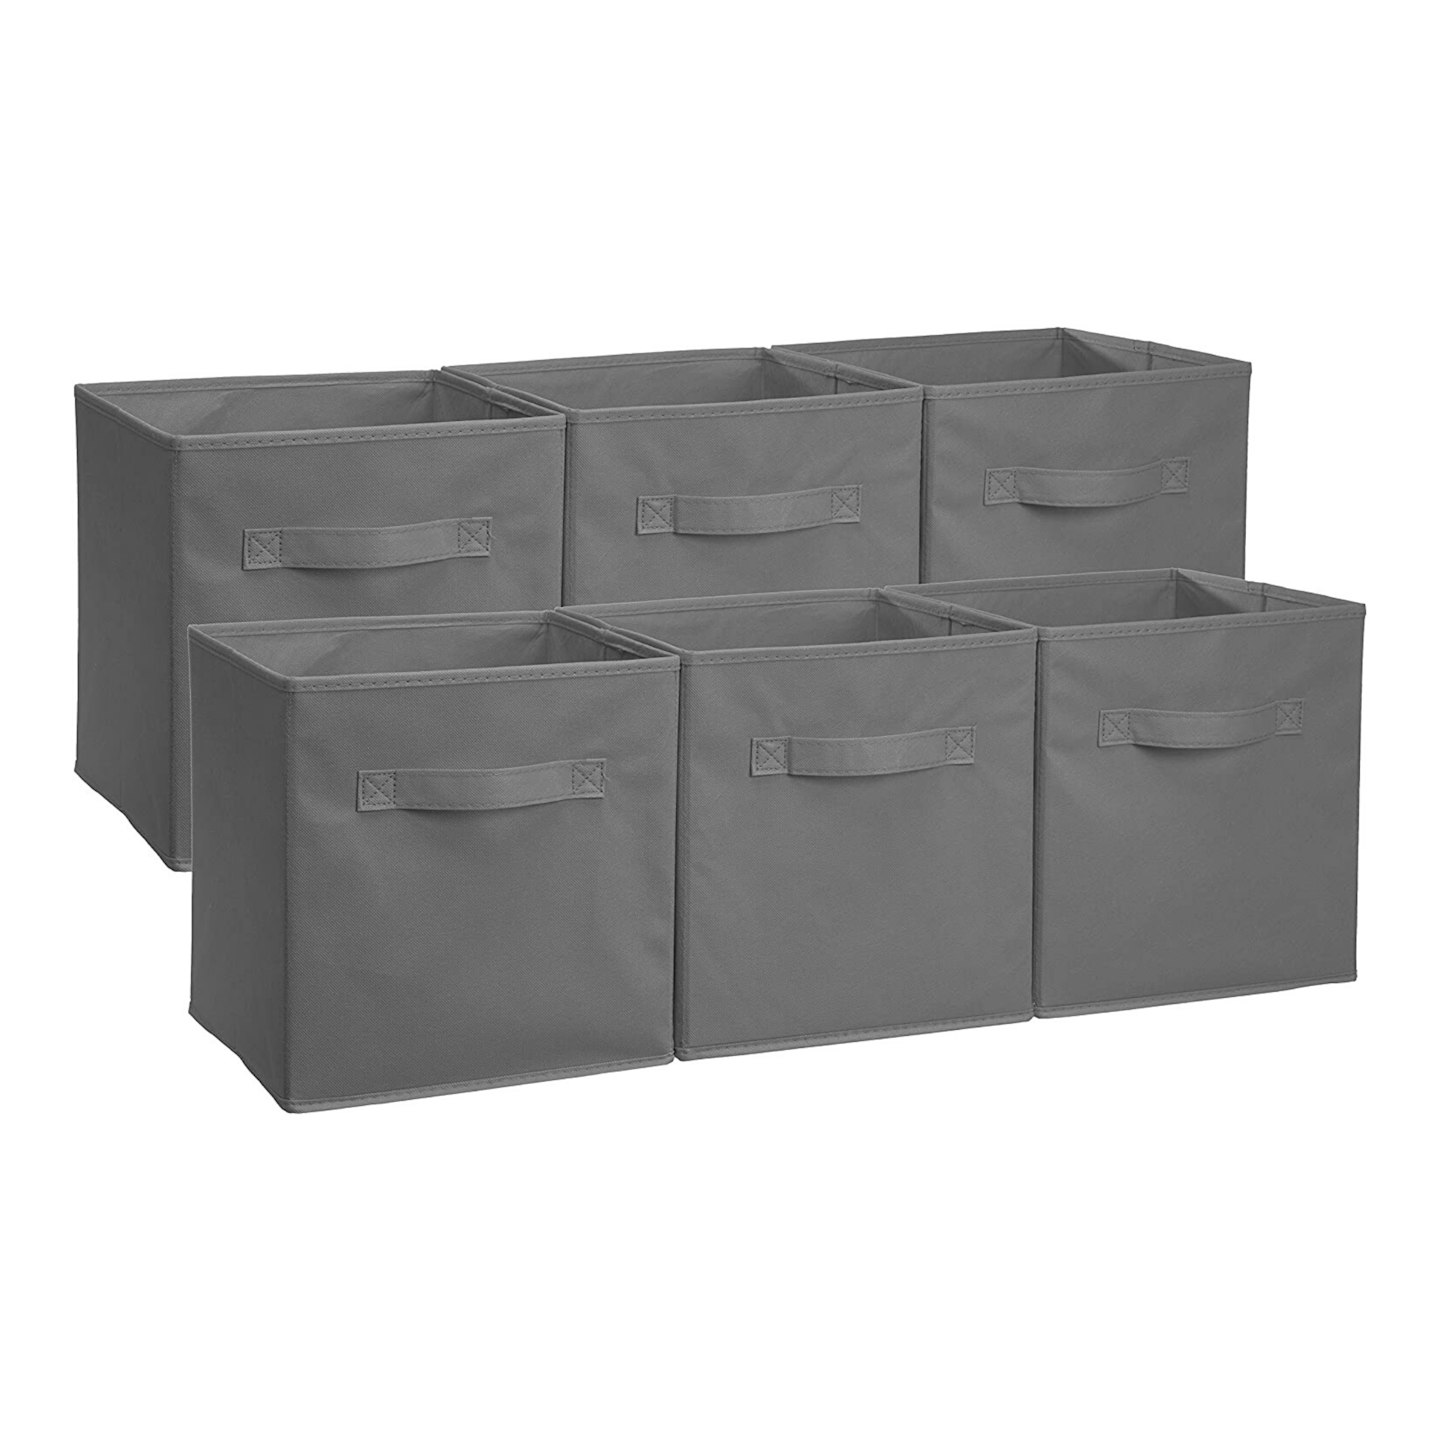 AmazonBasics Foldable Storage Cubes